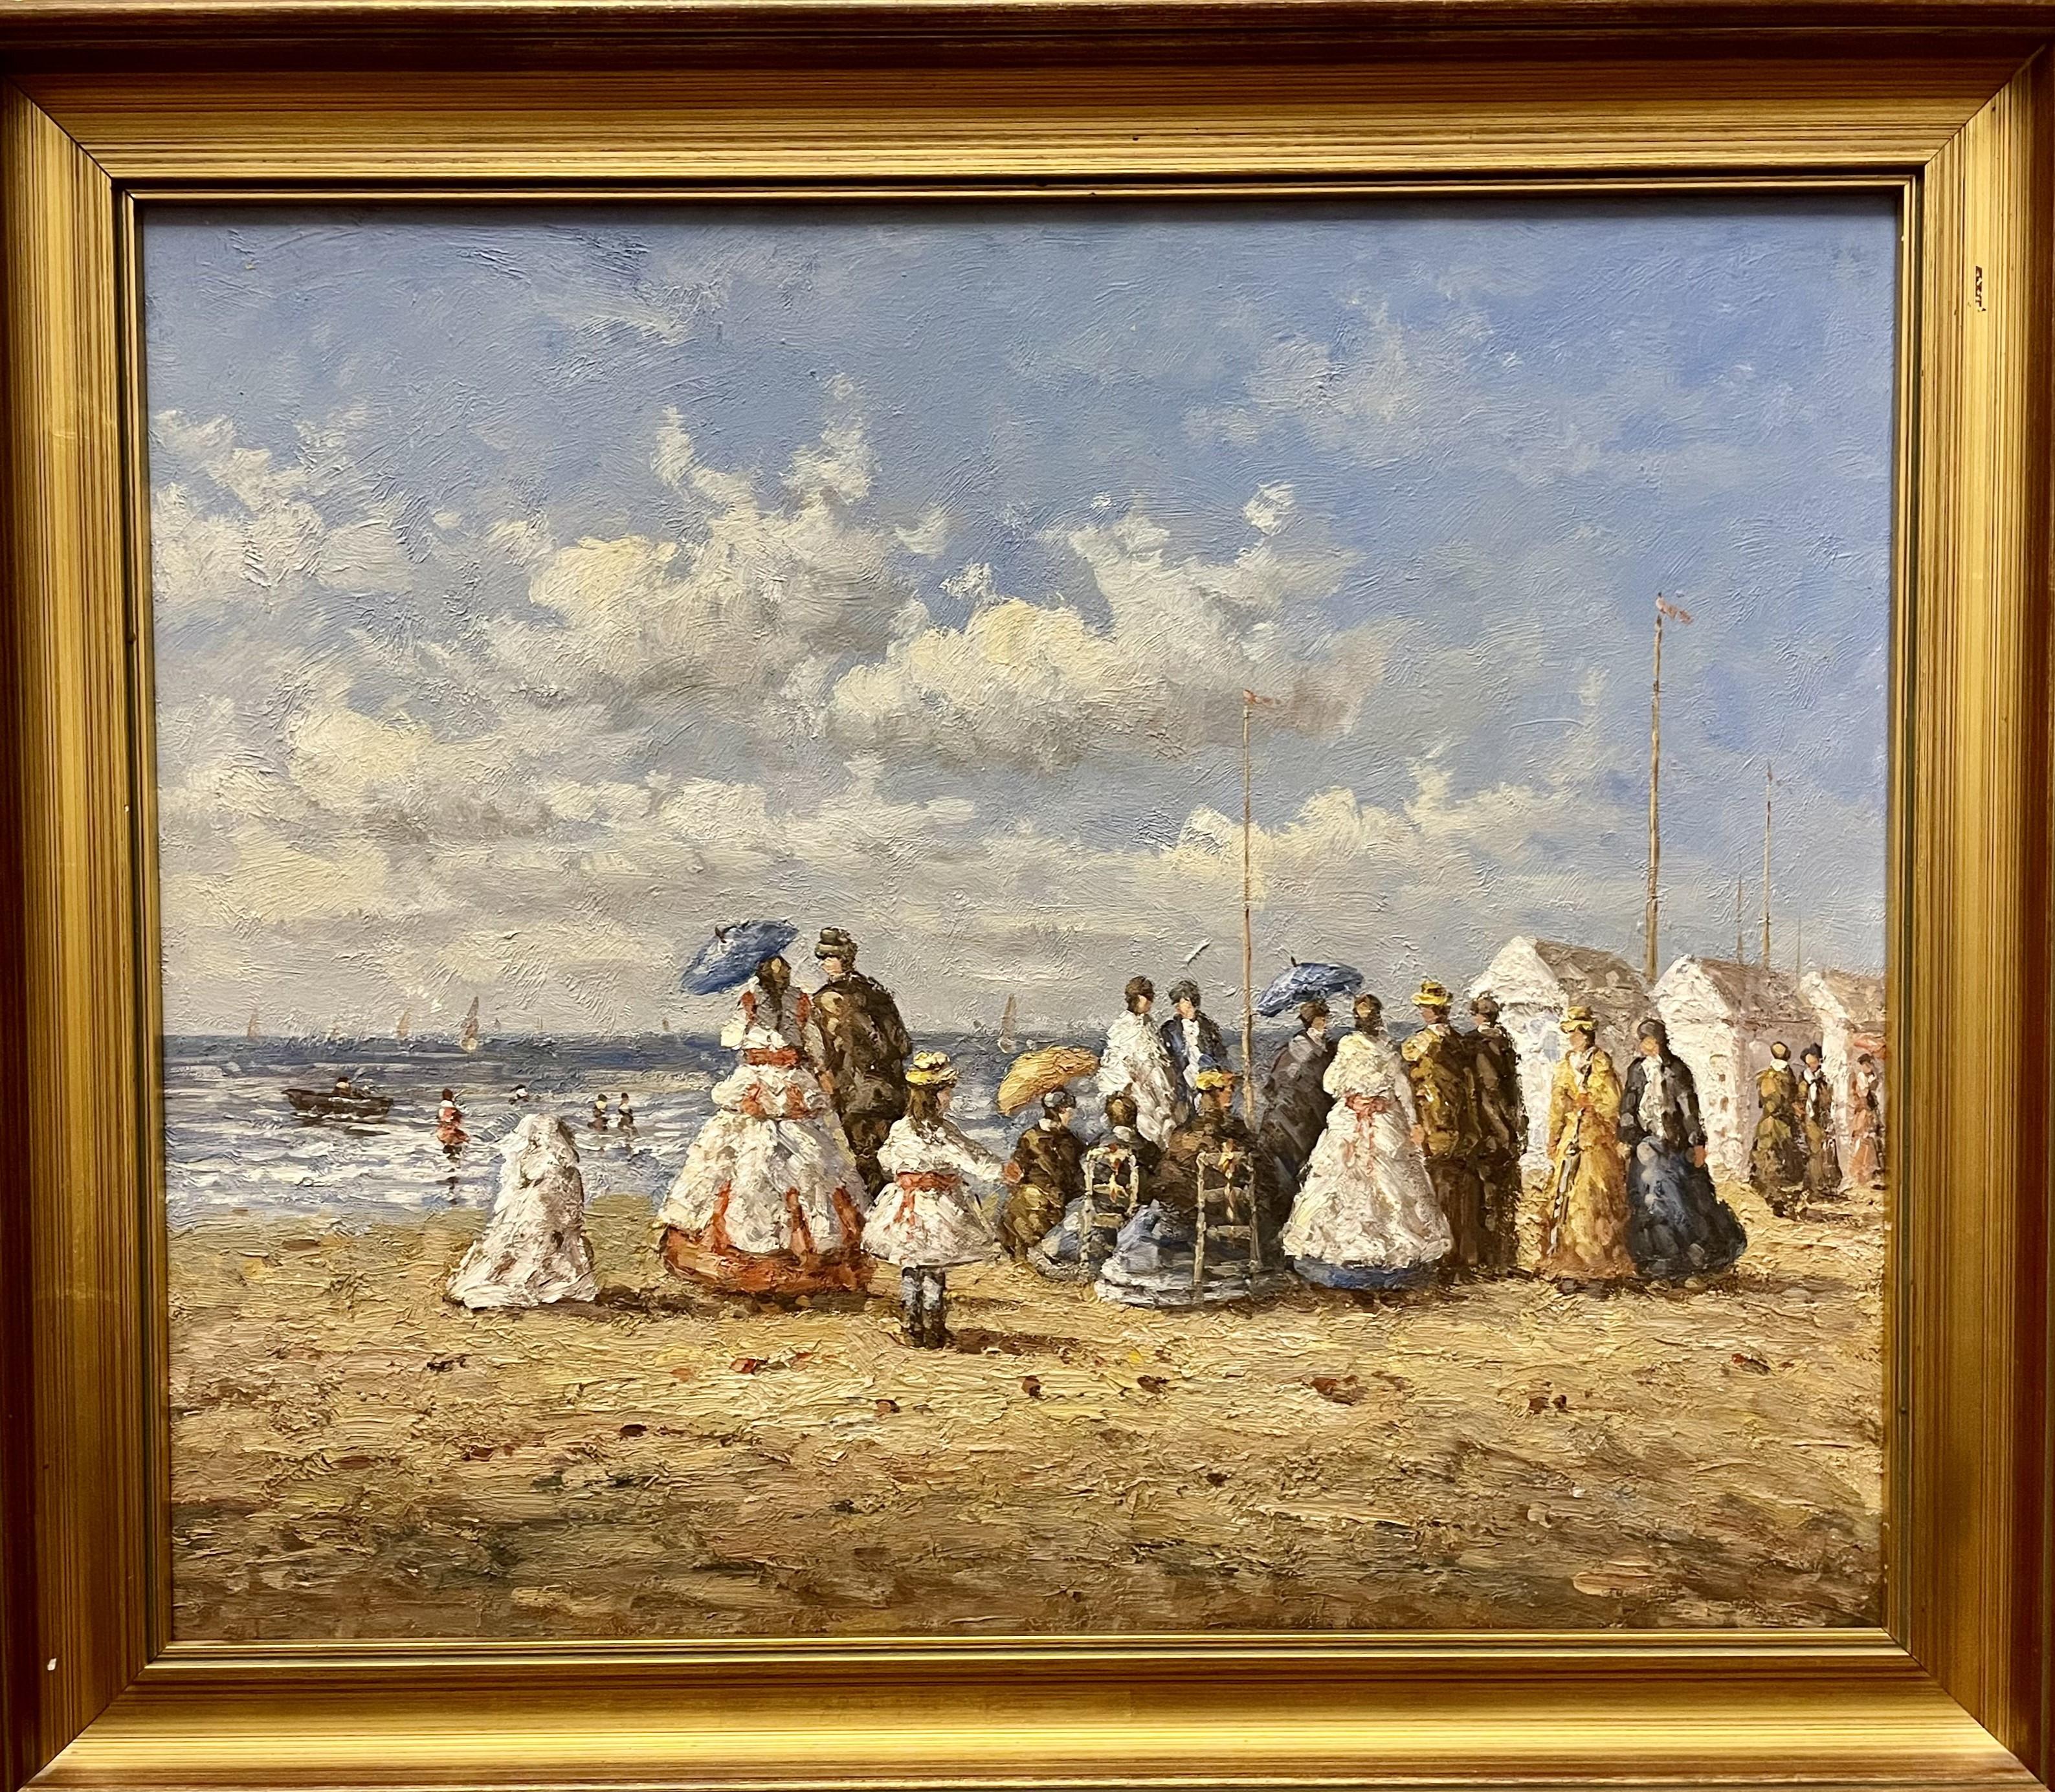 Unknown Landscape Painting – Edwardianische Strandszene, britisches Ölgemälde auf Leinwand, 20. Jahrhundert